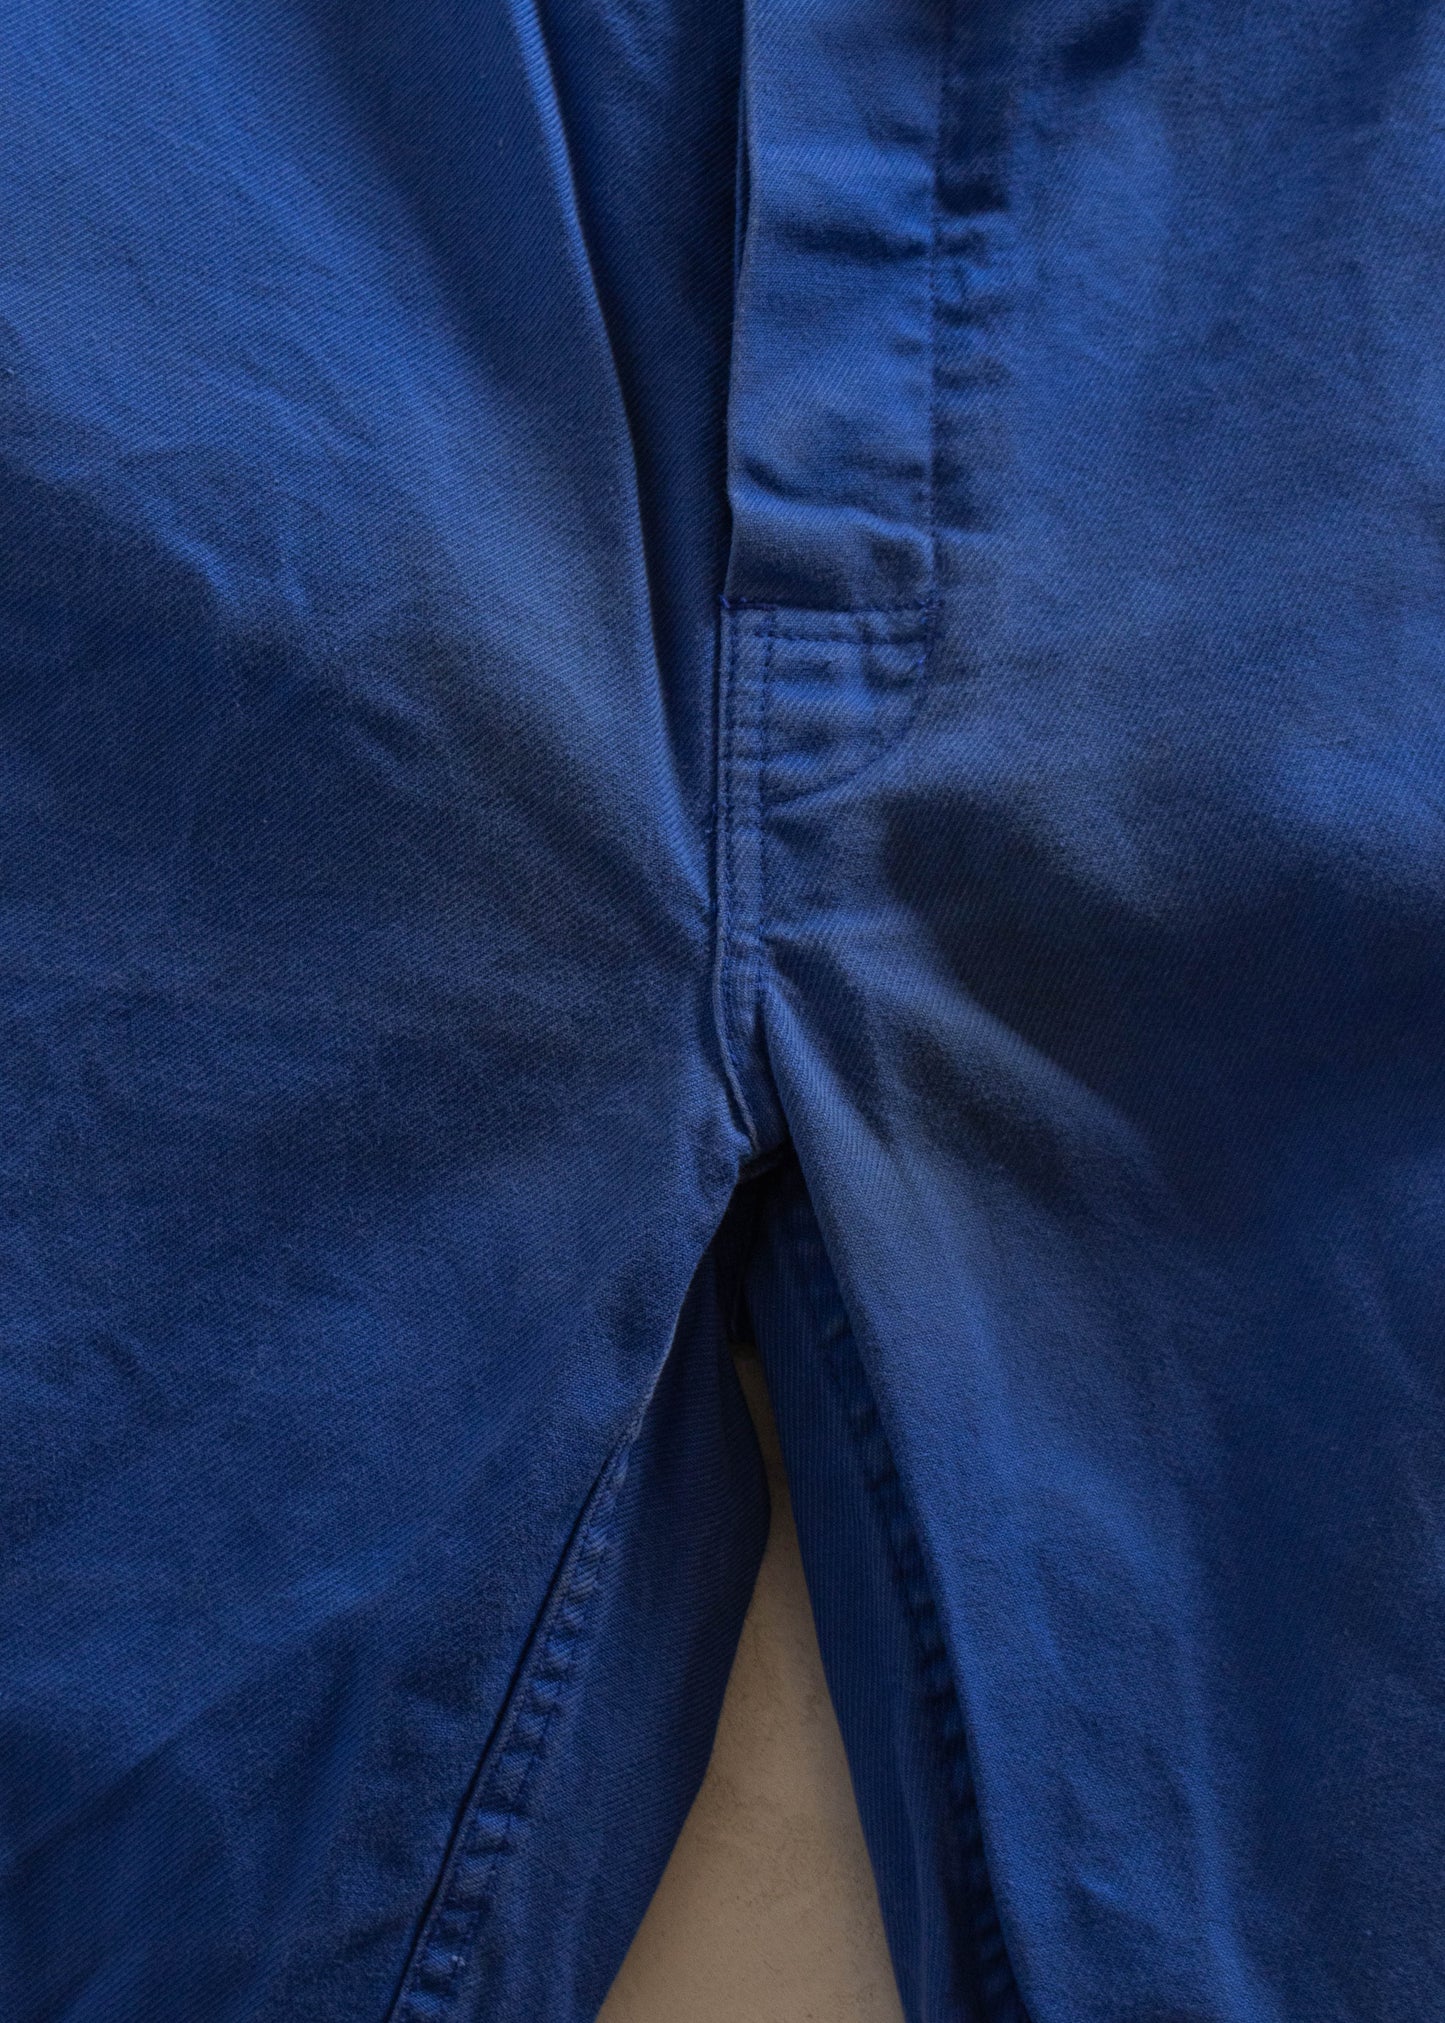 1980s European Workwear Chore Pants Size Women's 36 Men's 38